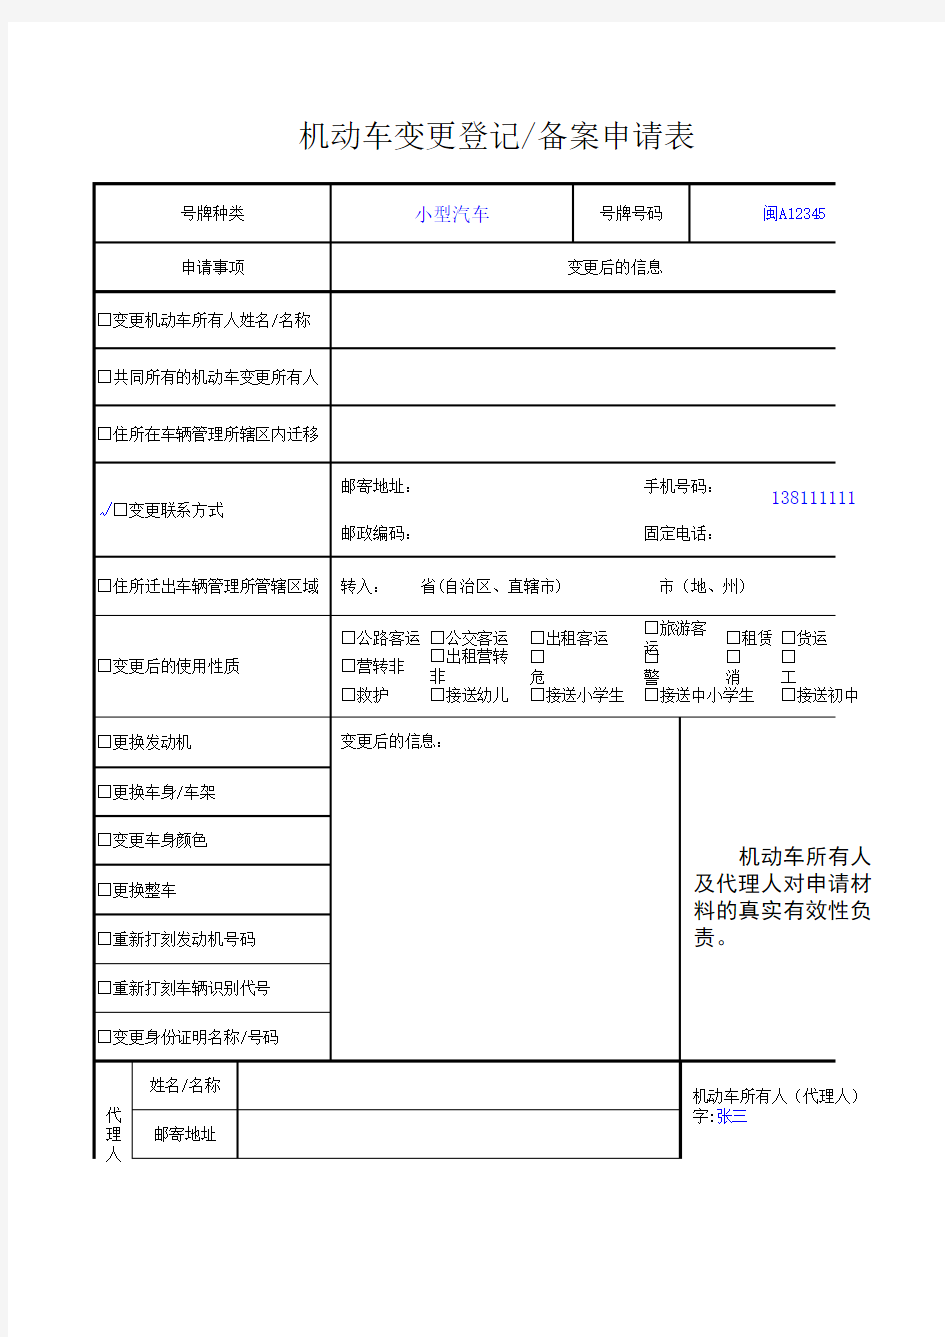 机动车变更登记、备案申请表 (办理联系方式、地址信息变更变更备案业务)